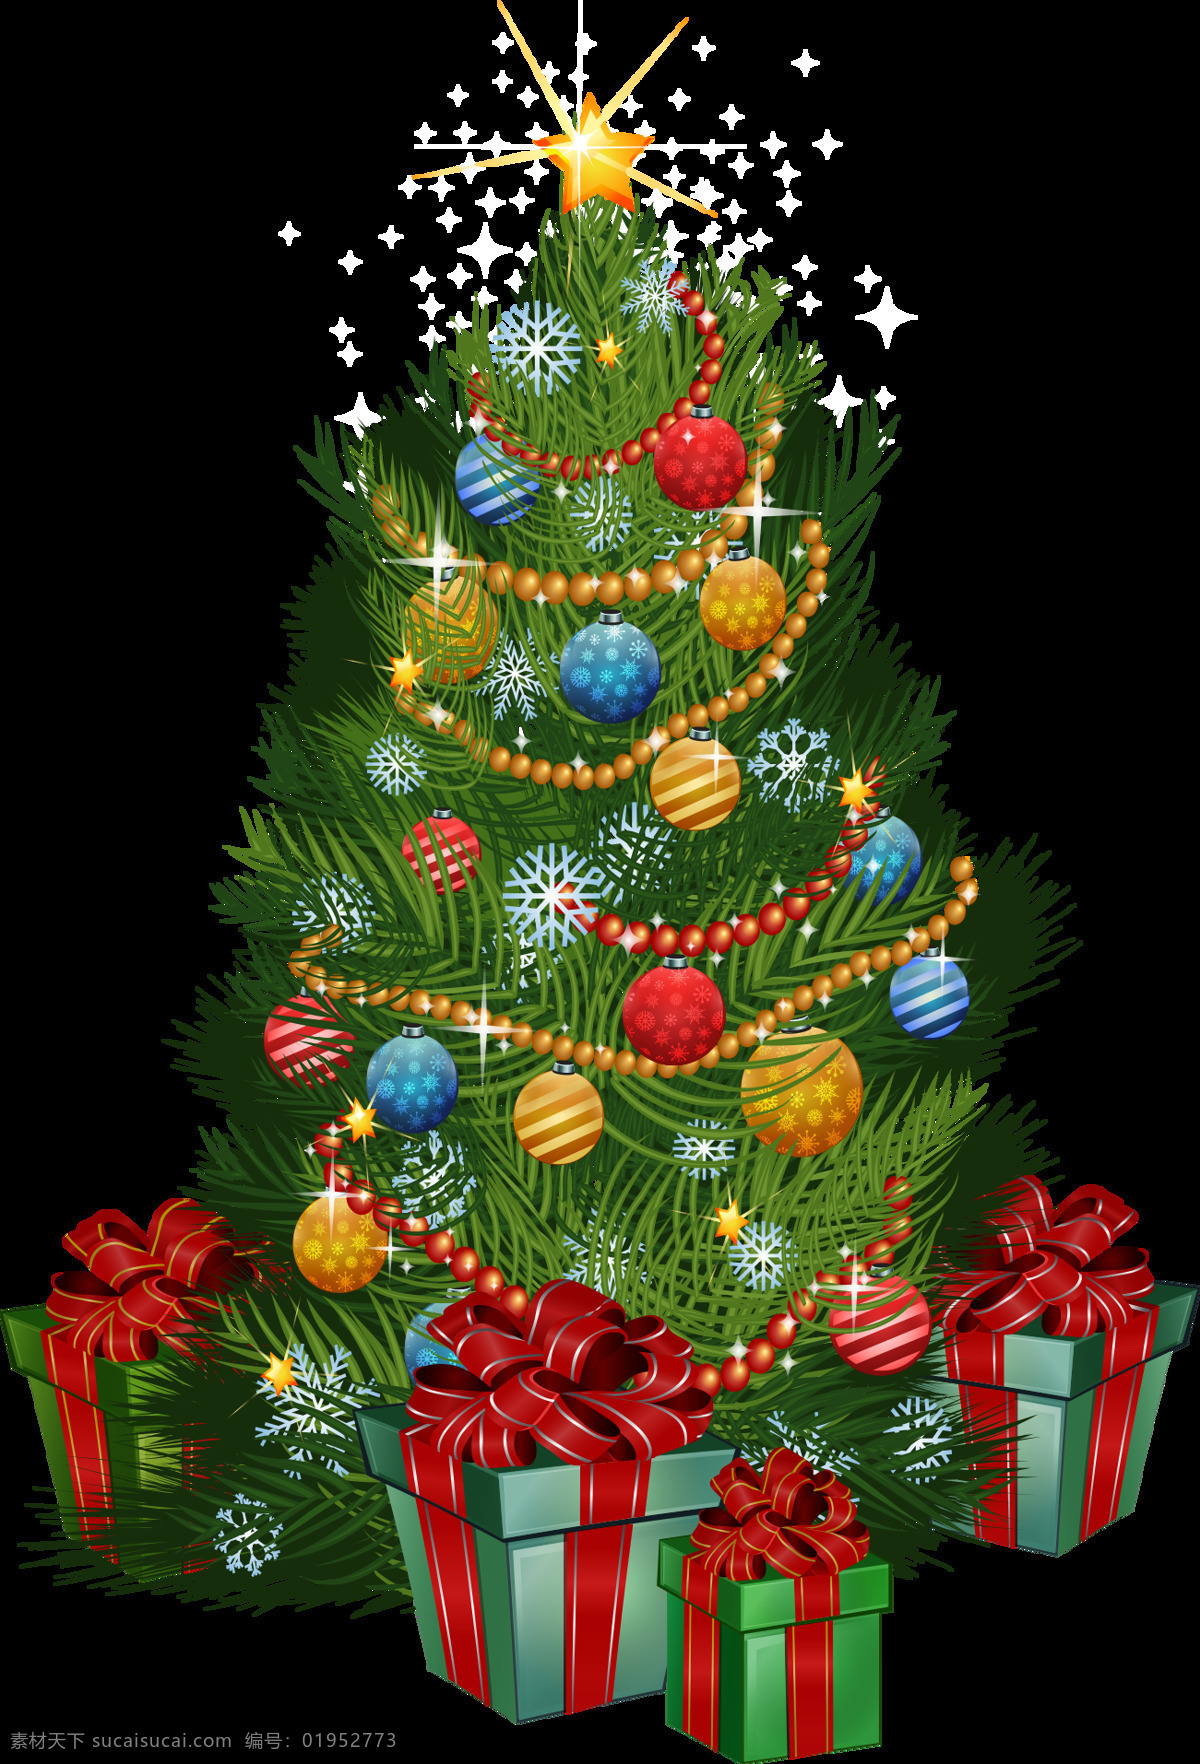 精美 圣诞树 节日 礼物 装饰 元素 christmas merry 节日元素 设计素材 圣诞节 圣诞老人 圣诞礼物 圣诞免抠元素 圣诞素材 圣诞装饰 新年快乐